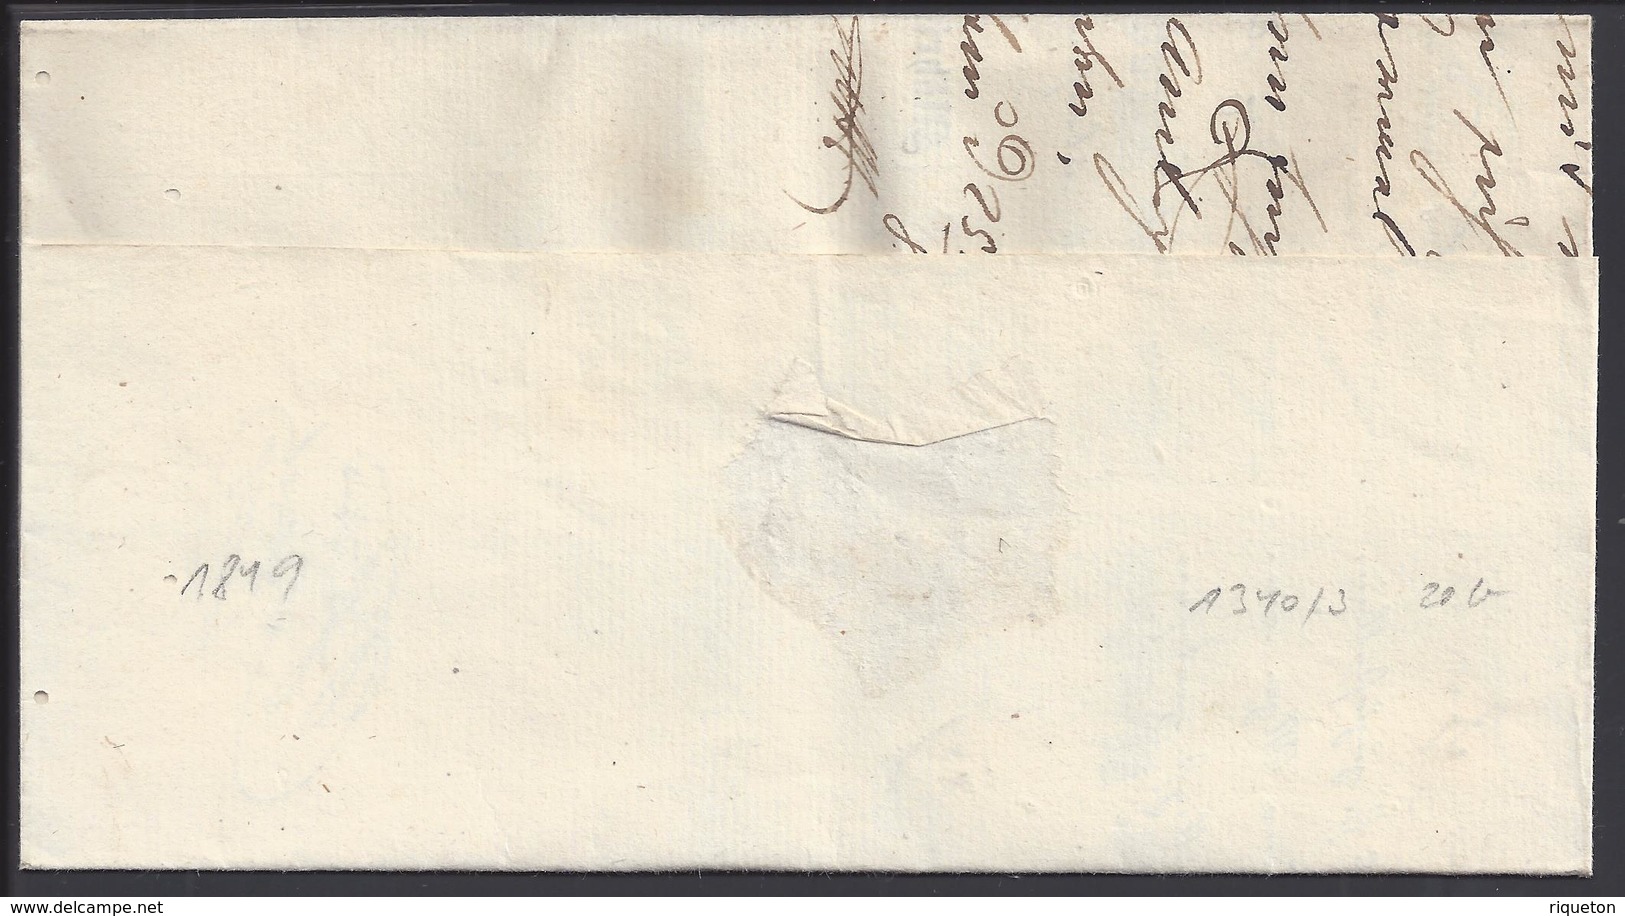 TCHECOSLOVAQUIE - 1849 - Document "Magistrature Du Roi Mahr. Neuftadt" - B/TB - - ...-1918 Préphilatélie